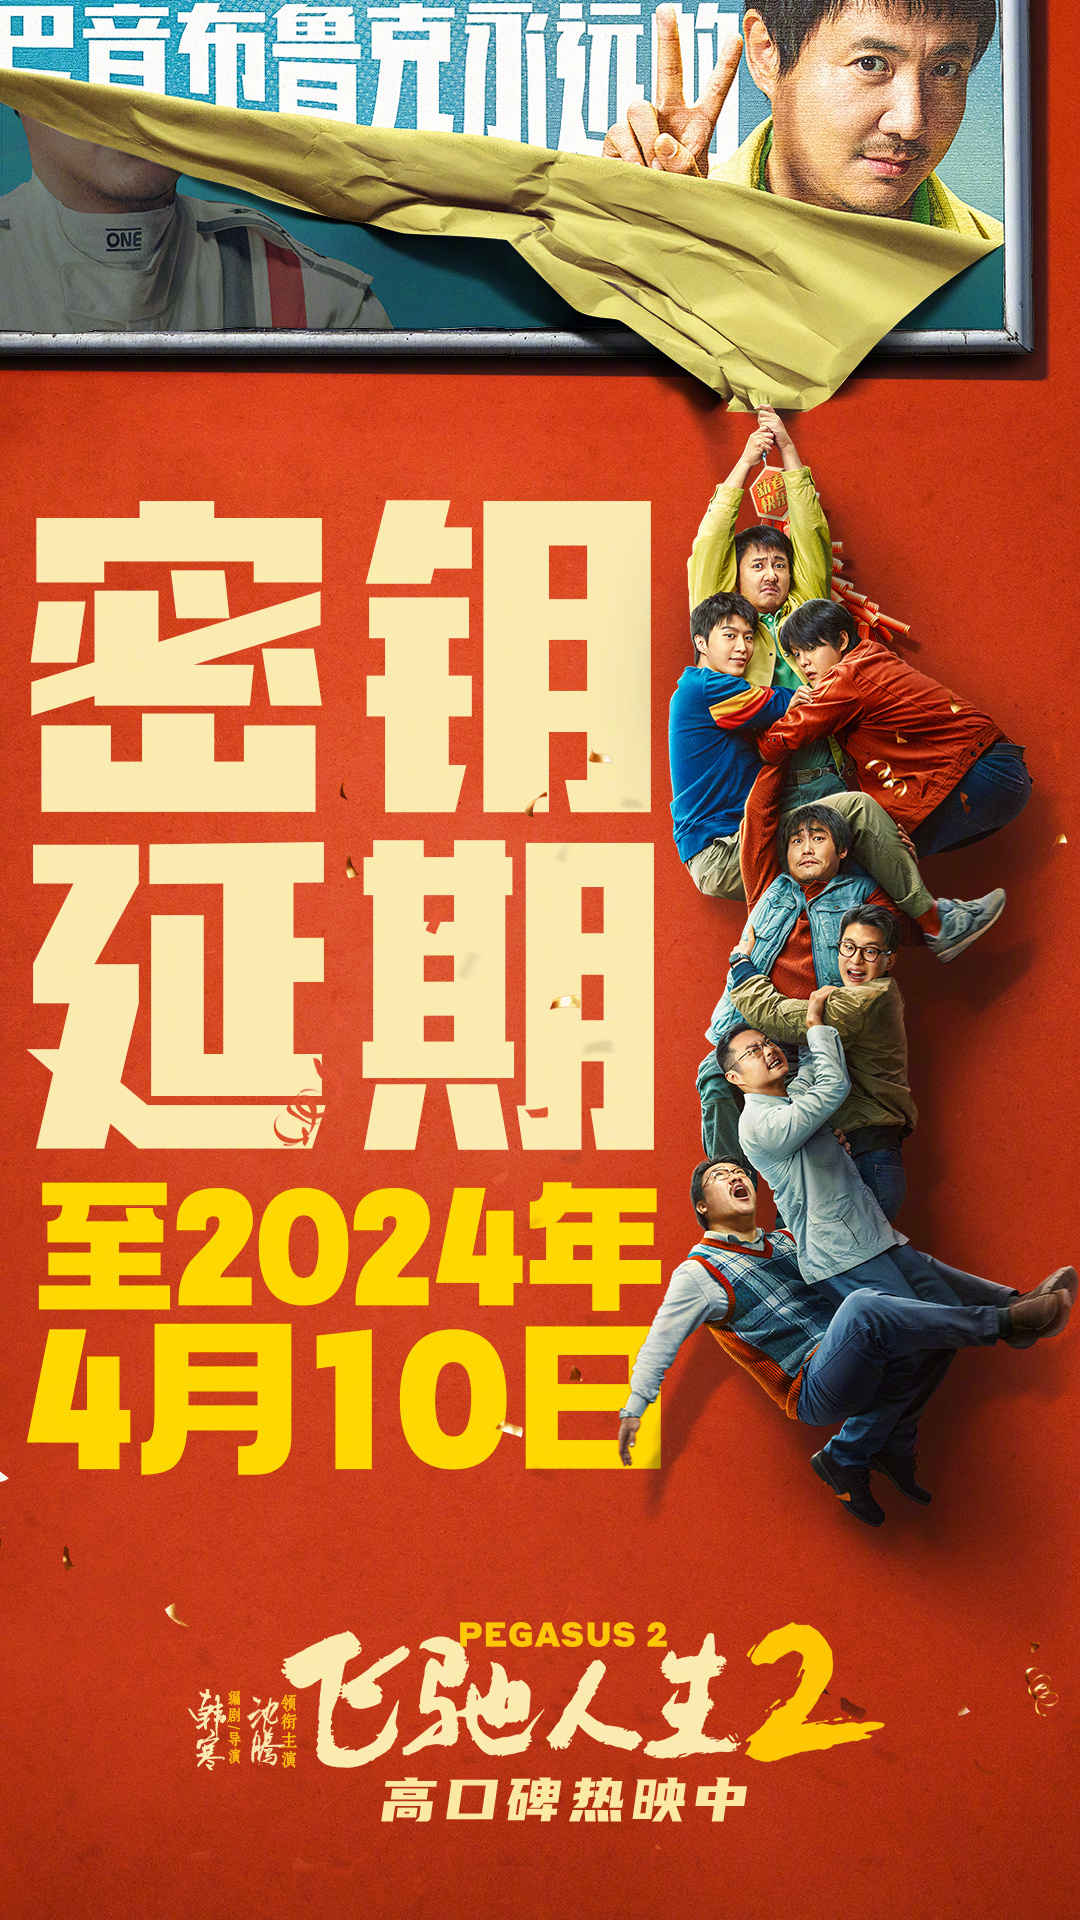 《飞驰人生2》密钥延期至4月10日 票房突破31亿